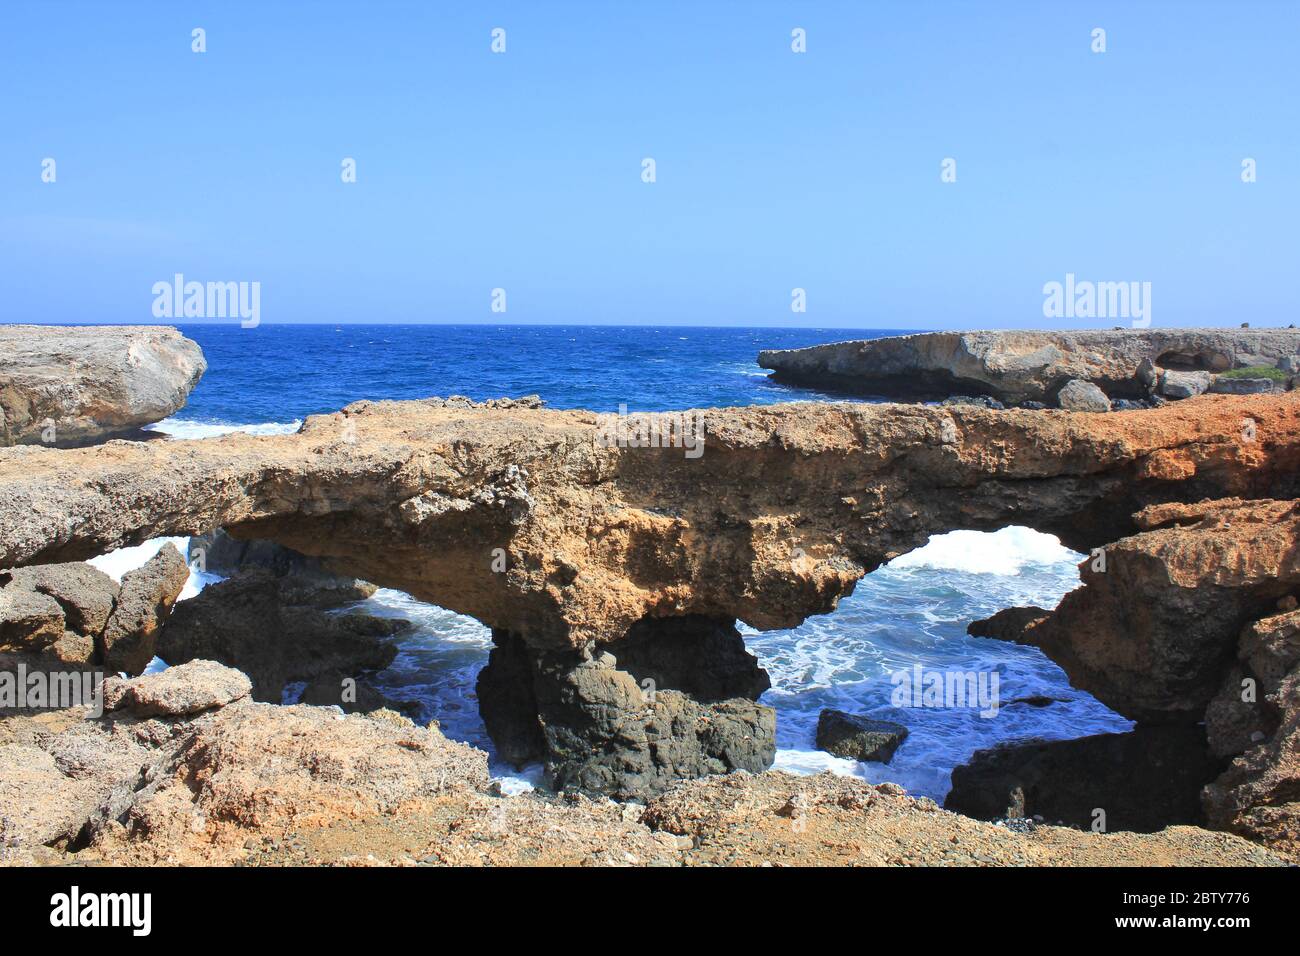 Arco di roccia o formazione di ponte naturale di calcare corallo sulla costa marina dell'isola di Aruba. Caraibi olandesi Foto Stock